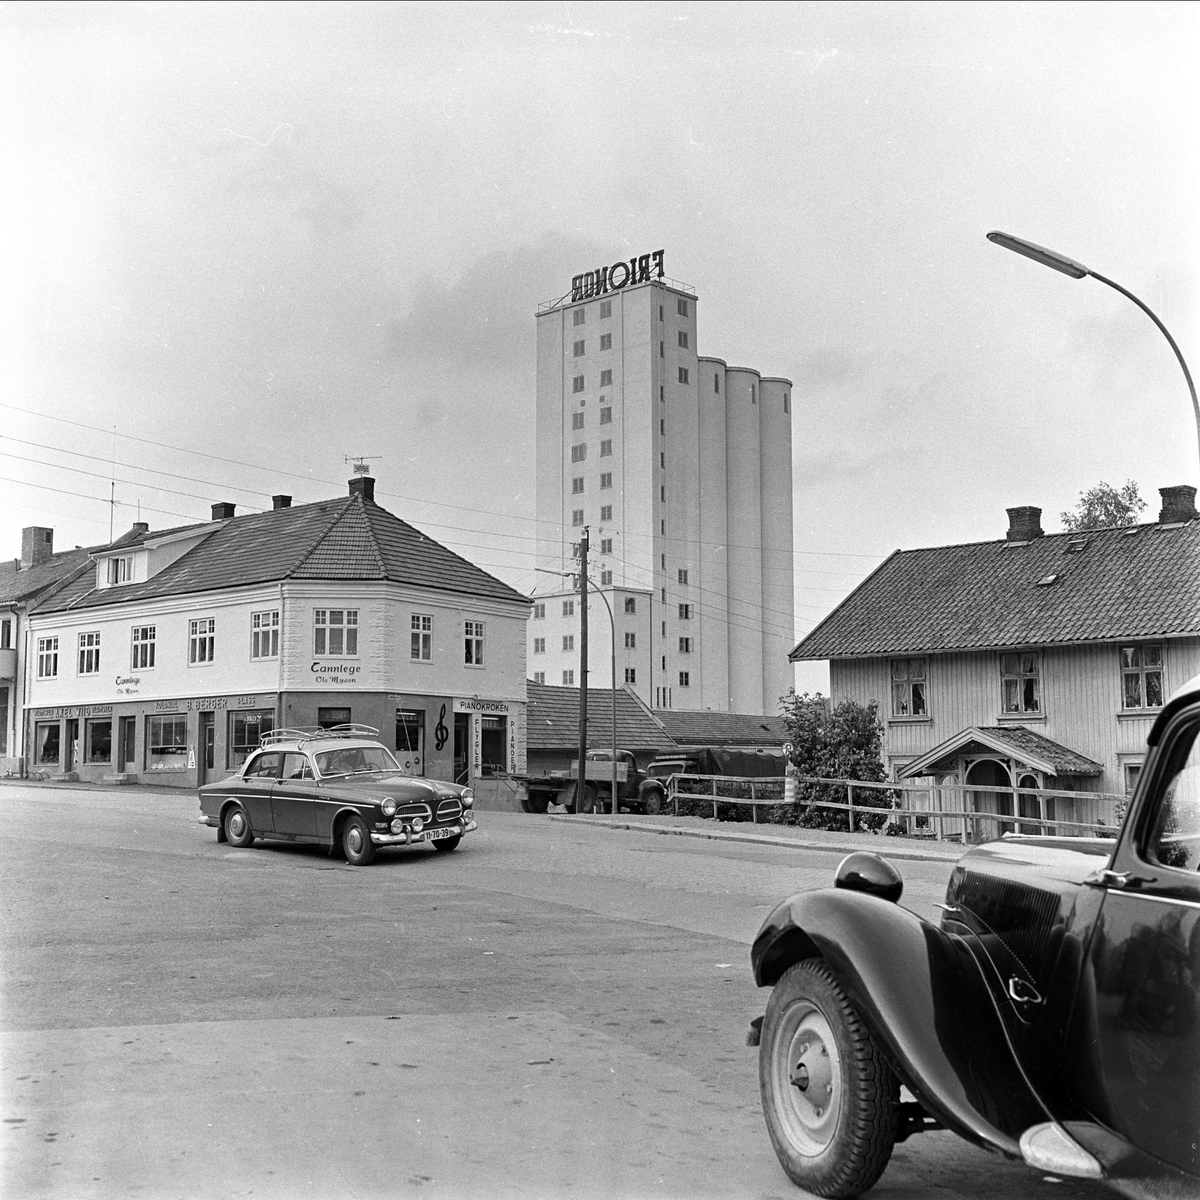 Mysen, Eidsberg. 26.08.1960. Bygninger, kornsilo og biler av typen Volvo Amazon med Citroën 1934-57 i forgrunnen.